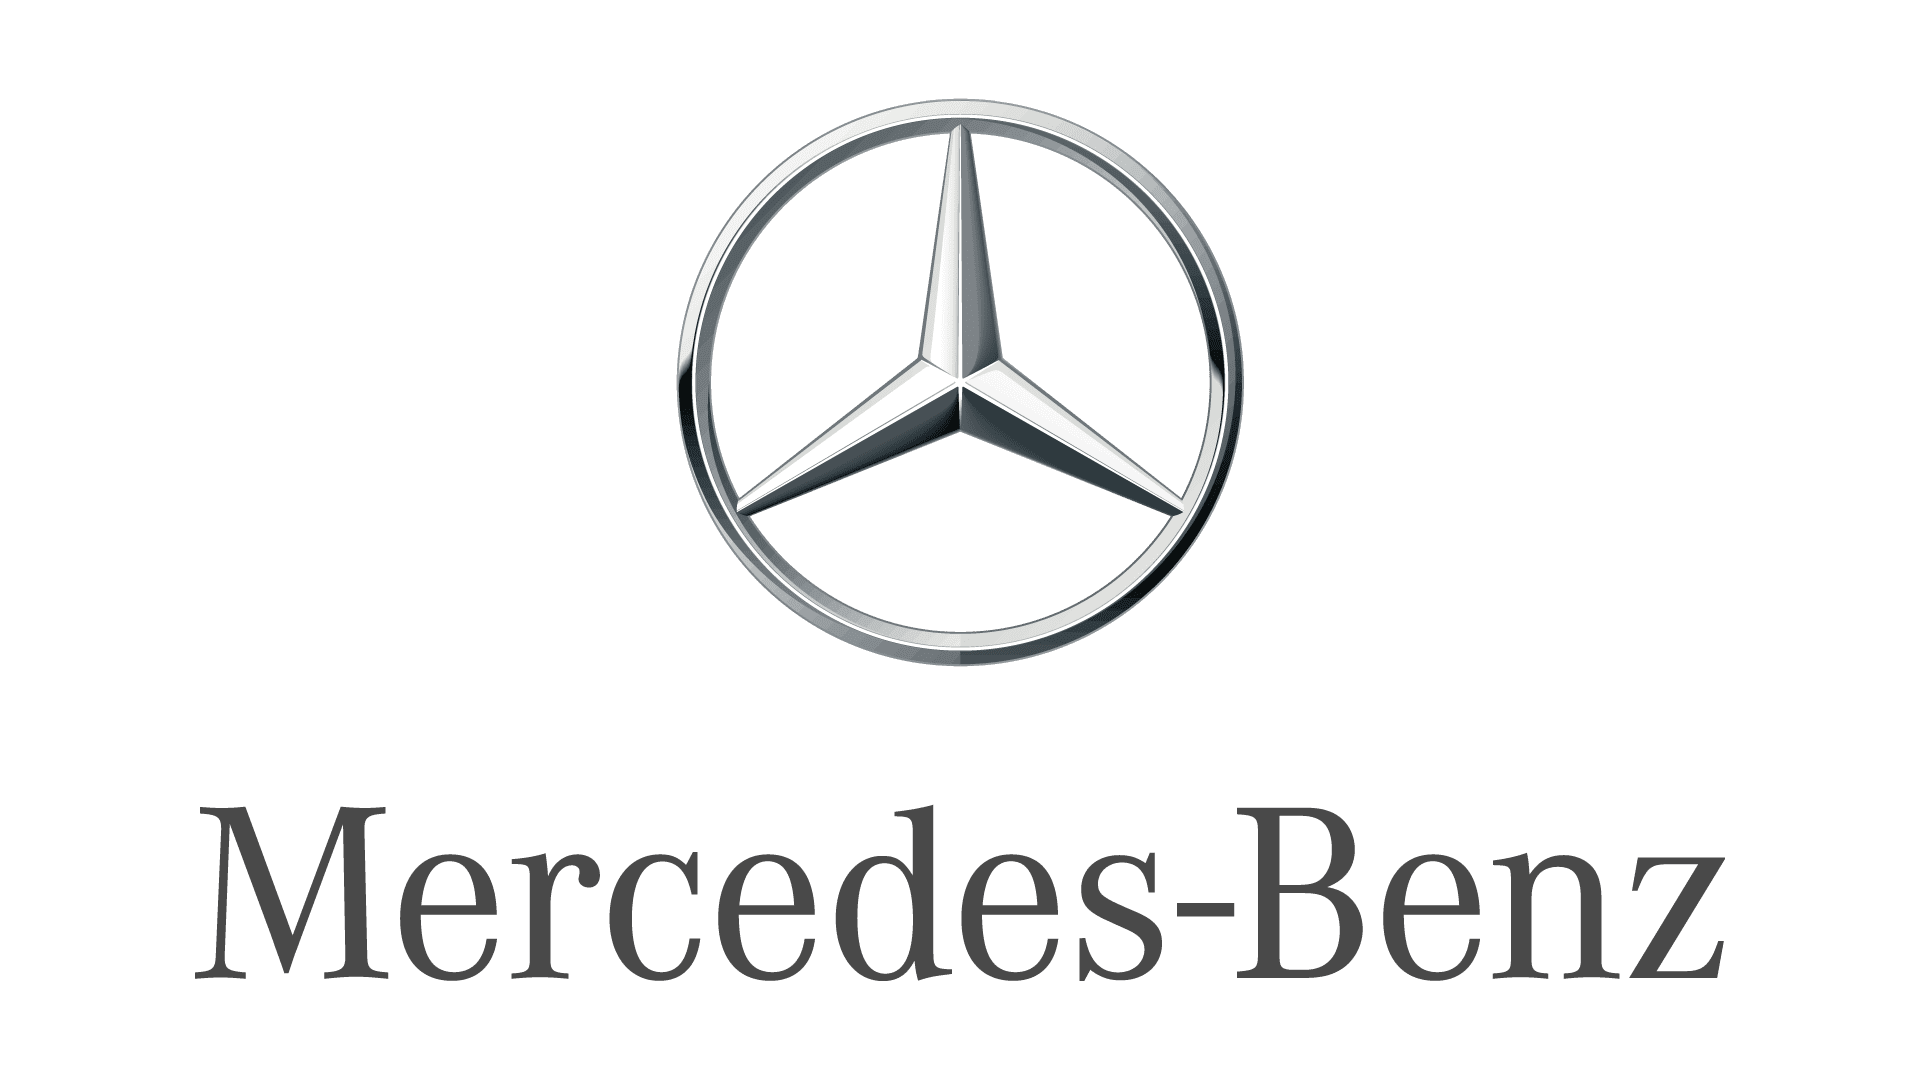 Комфорт Mercedes-Benz GLA Основные функциональные пакеты оборудования комфорта #7